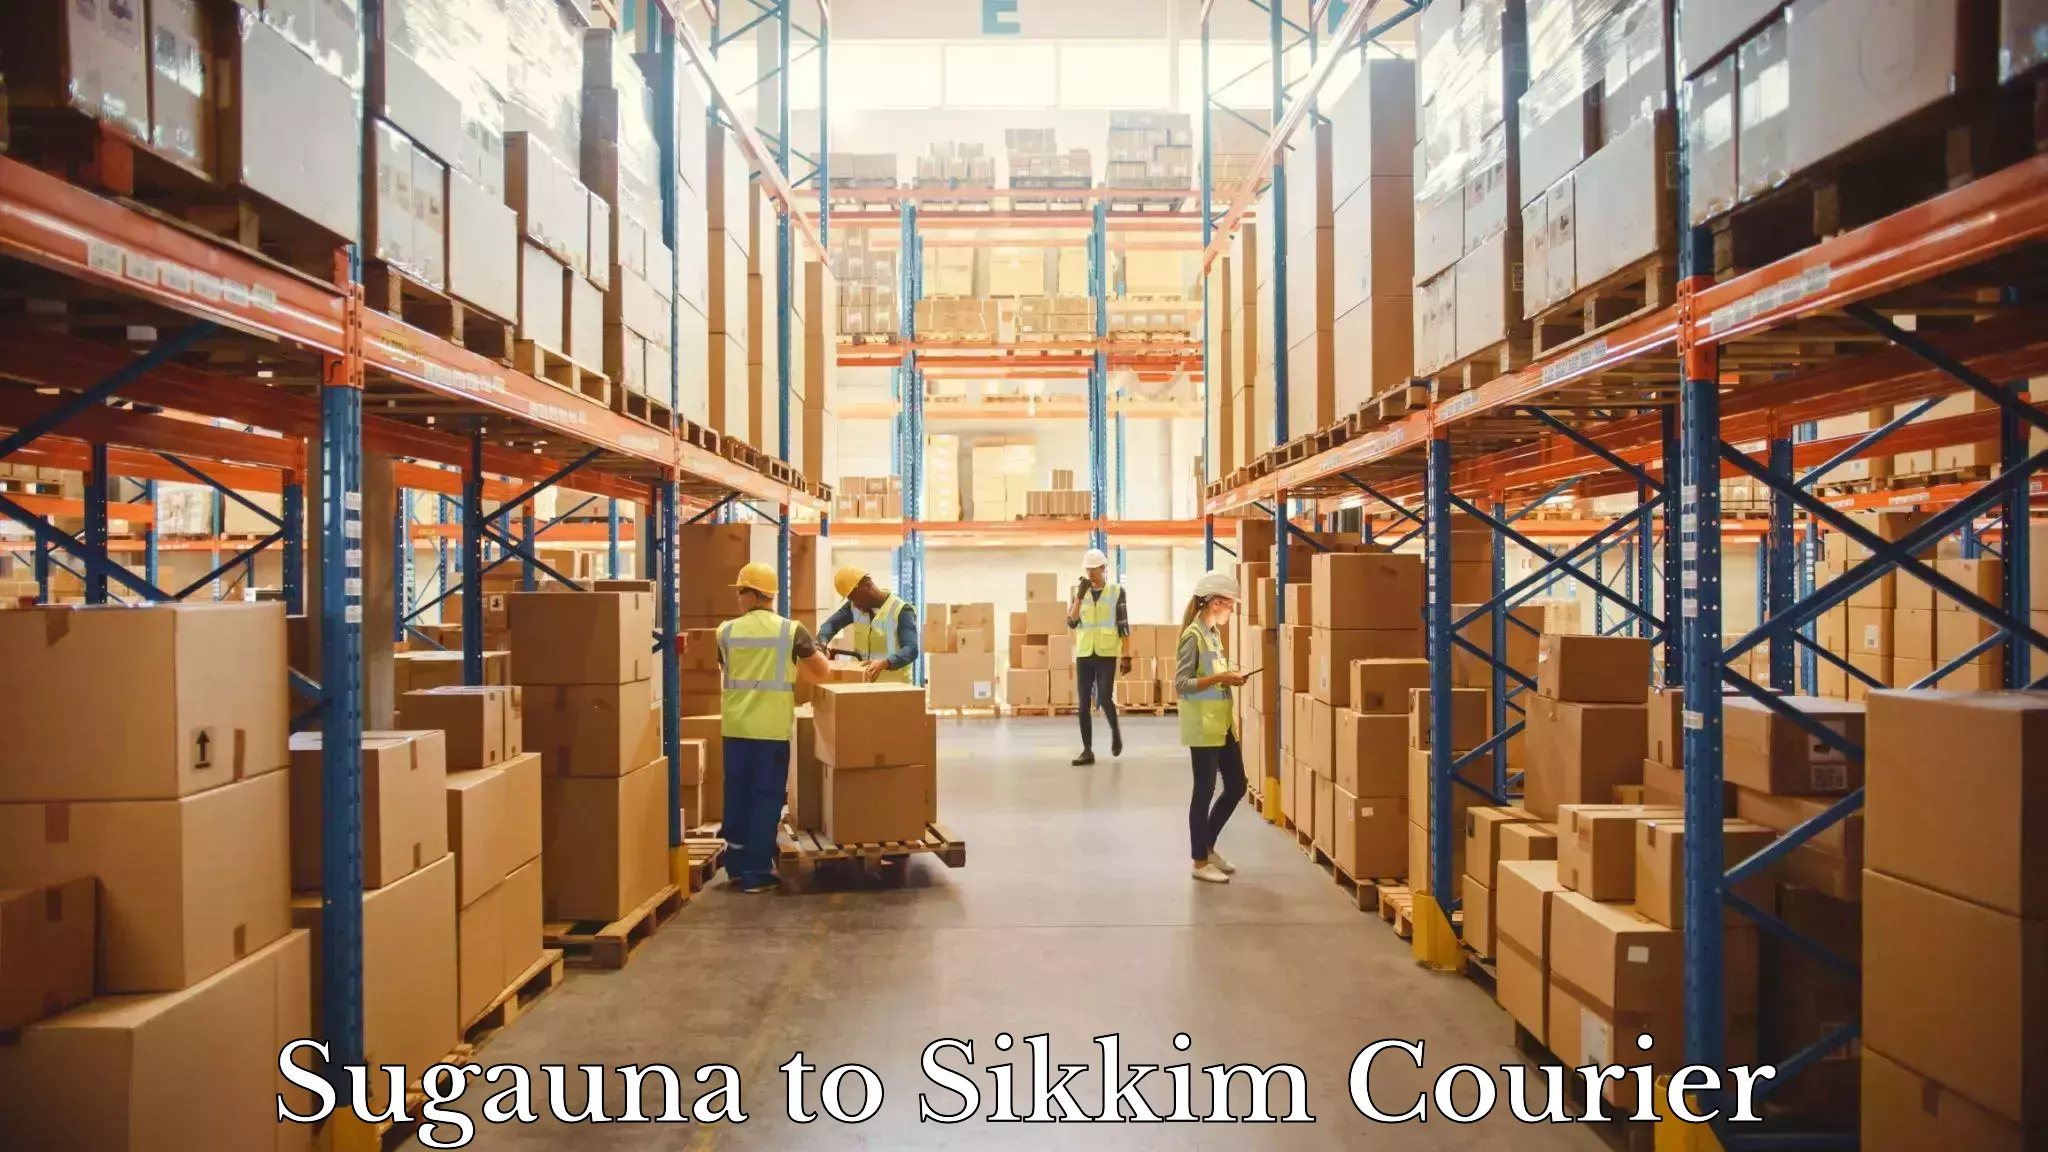 Logistics service provider Sugauna to Sikkim